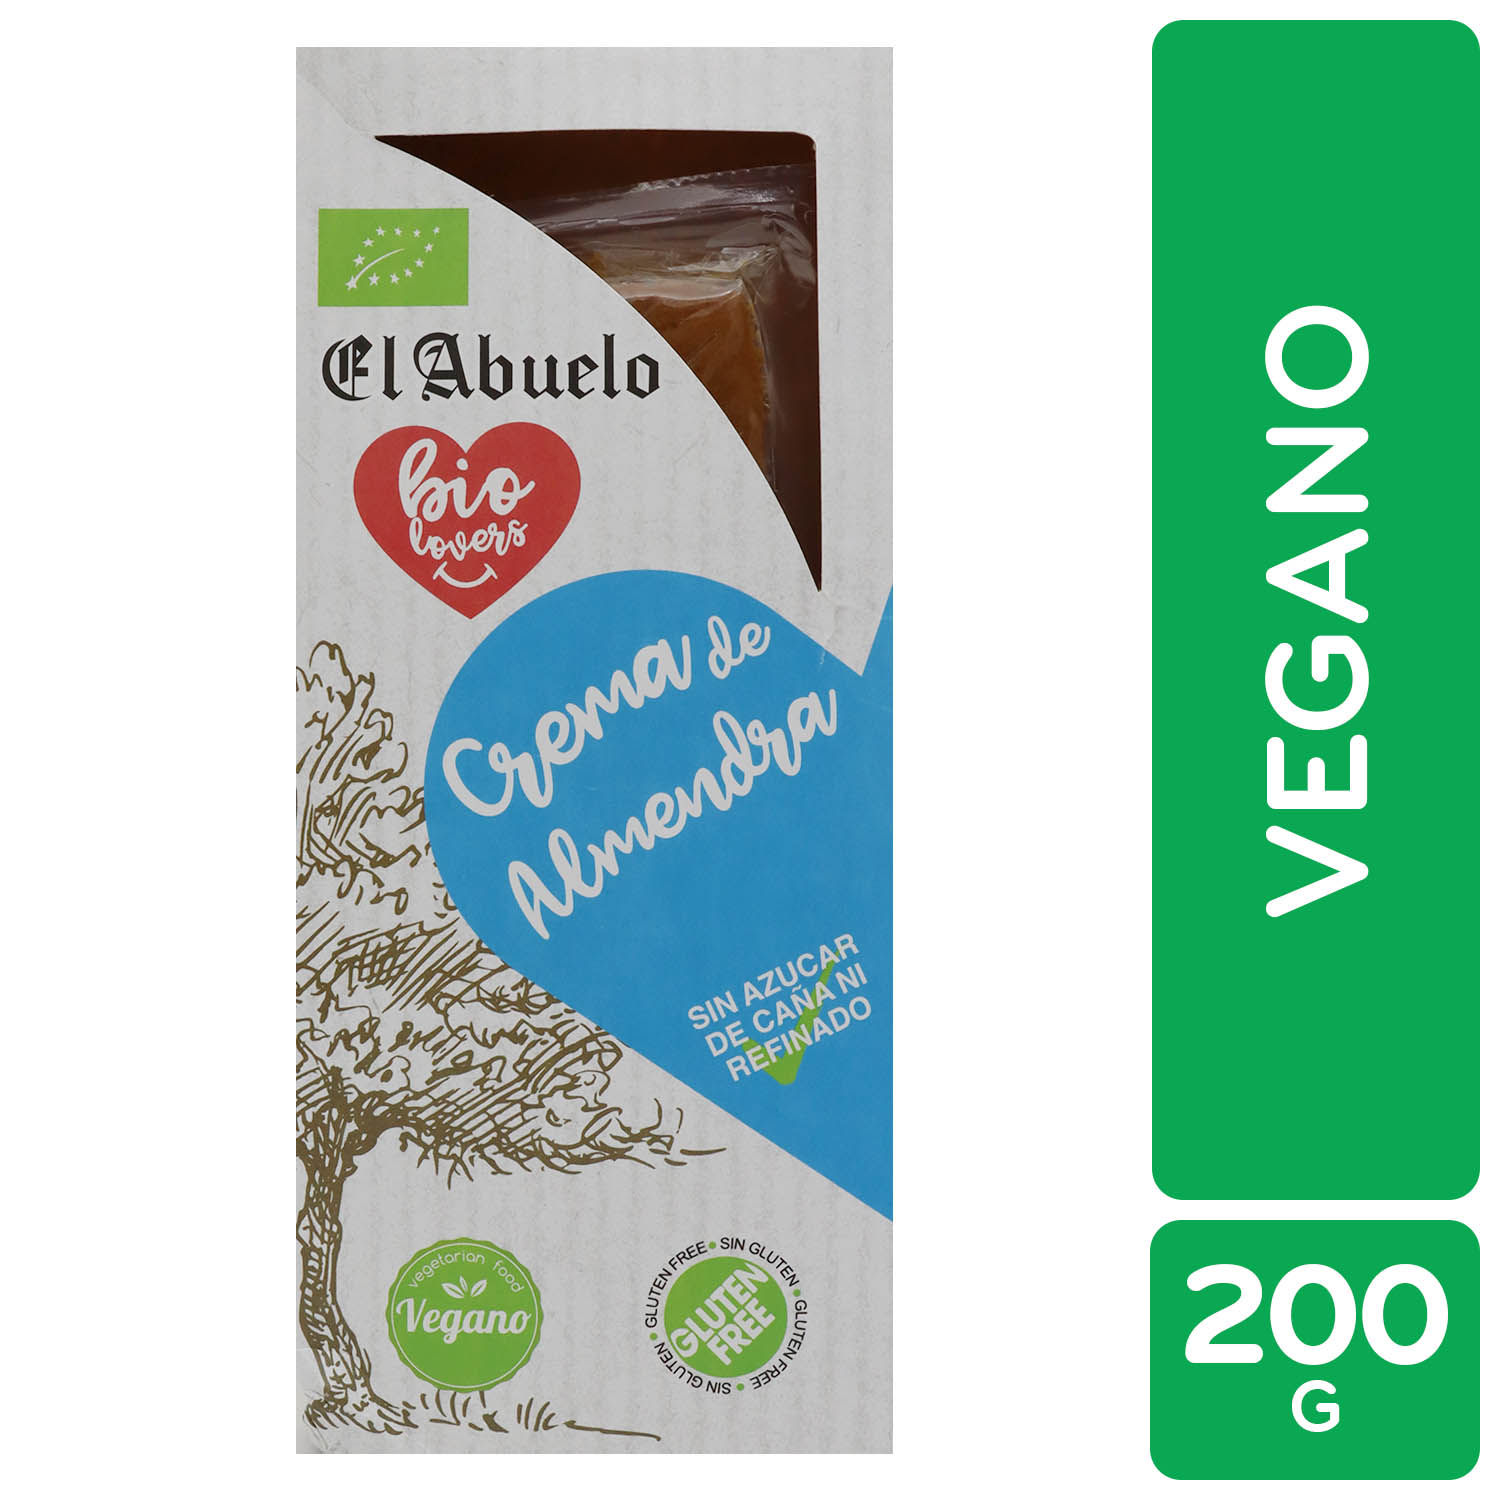 Turron Natural Crema Almendra Vegano El Abuelo Caja 200 G